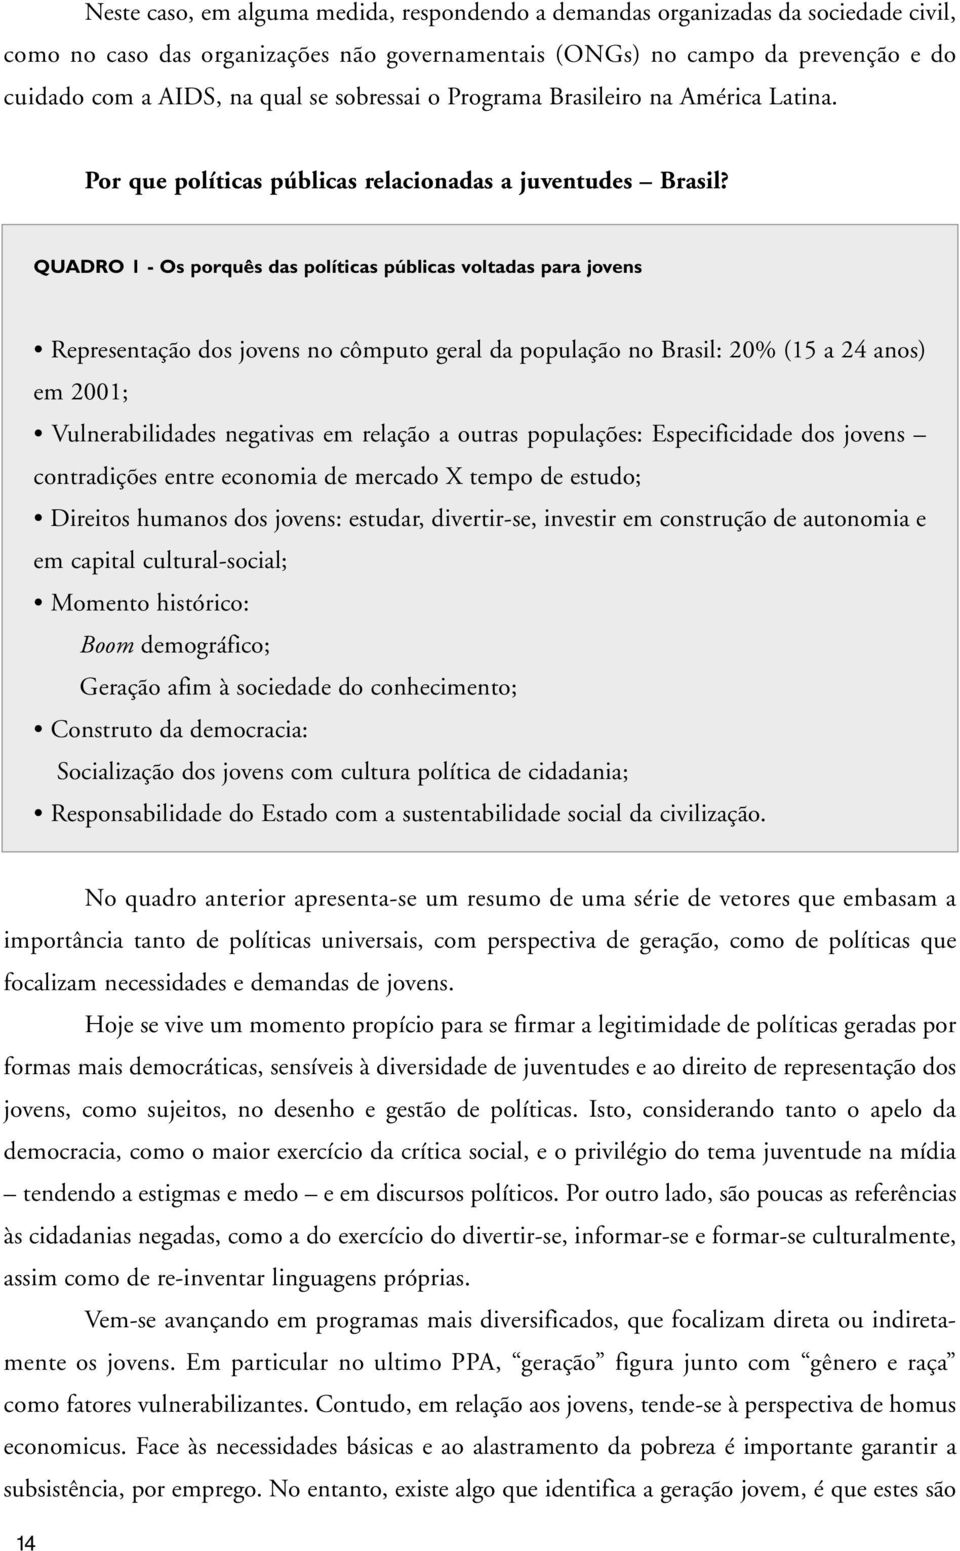 QUADRO 1 - Os porquês das políticas públicas voltadas para jovens Representação dos jovens no cômputo geral da população no Brasil: 20% (15 a 24 anos) em 2001; Vulnerabilidades negativas em relação a